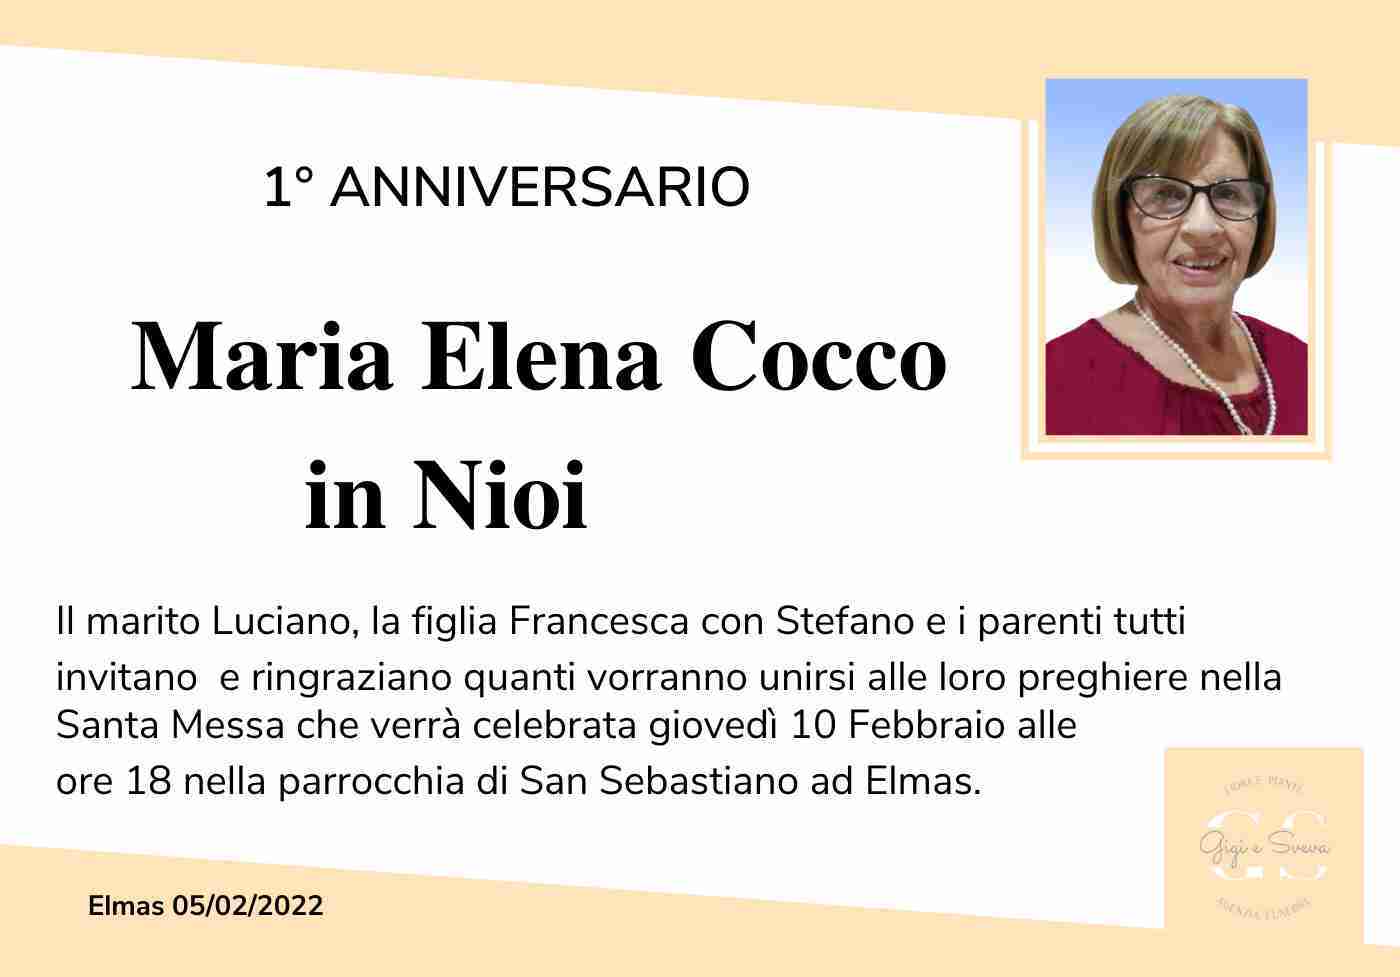 Maria Elena Cocco